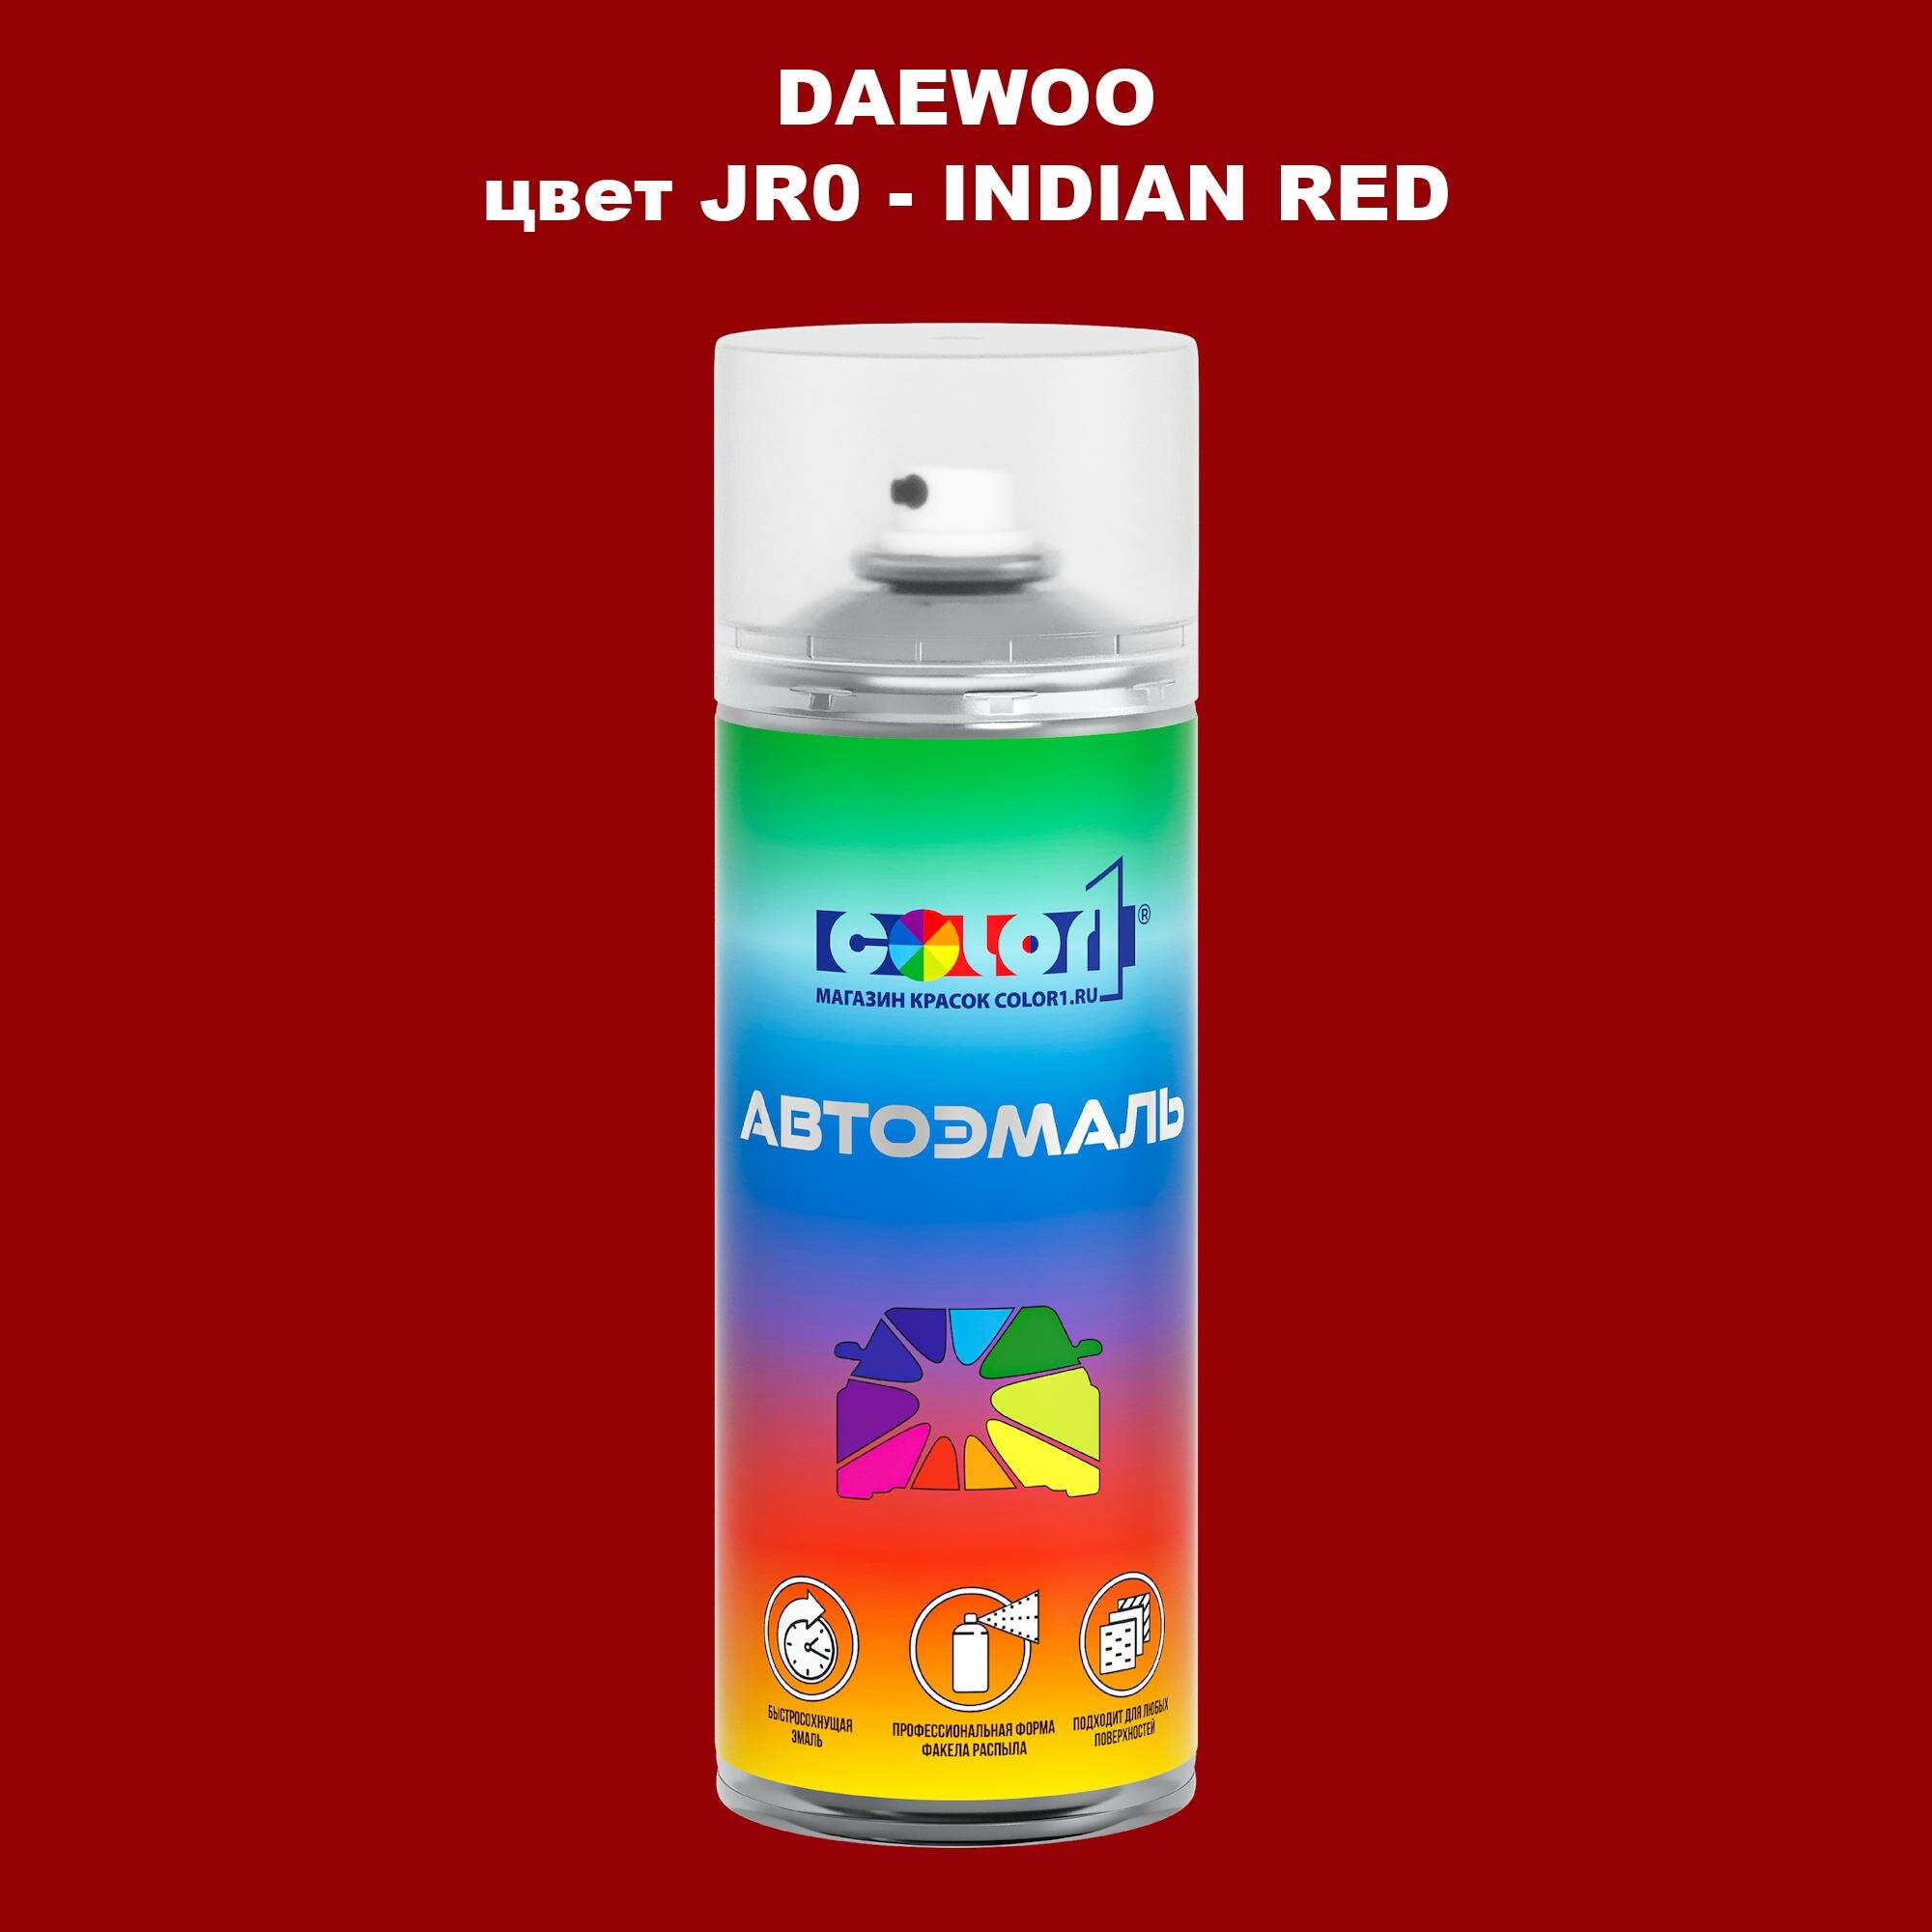 Аэрозольная краска COLOR1 для DAEWOO, цвет JR0 - INDIAN RED